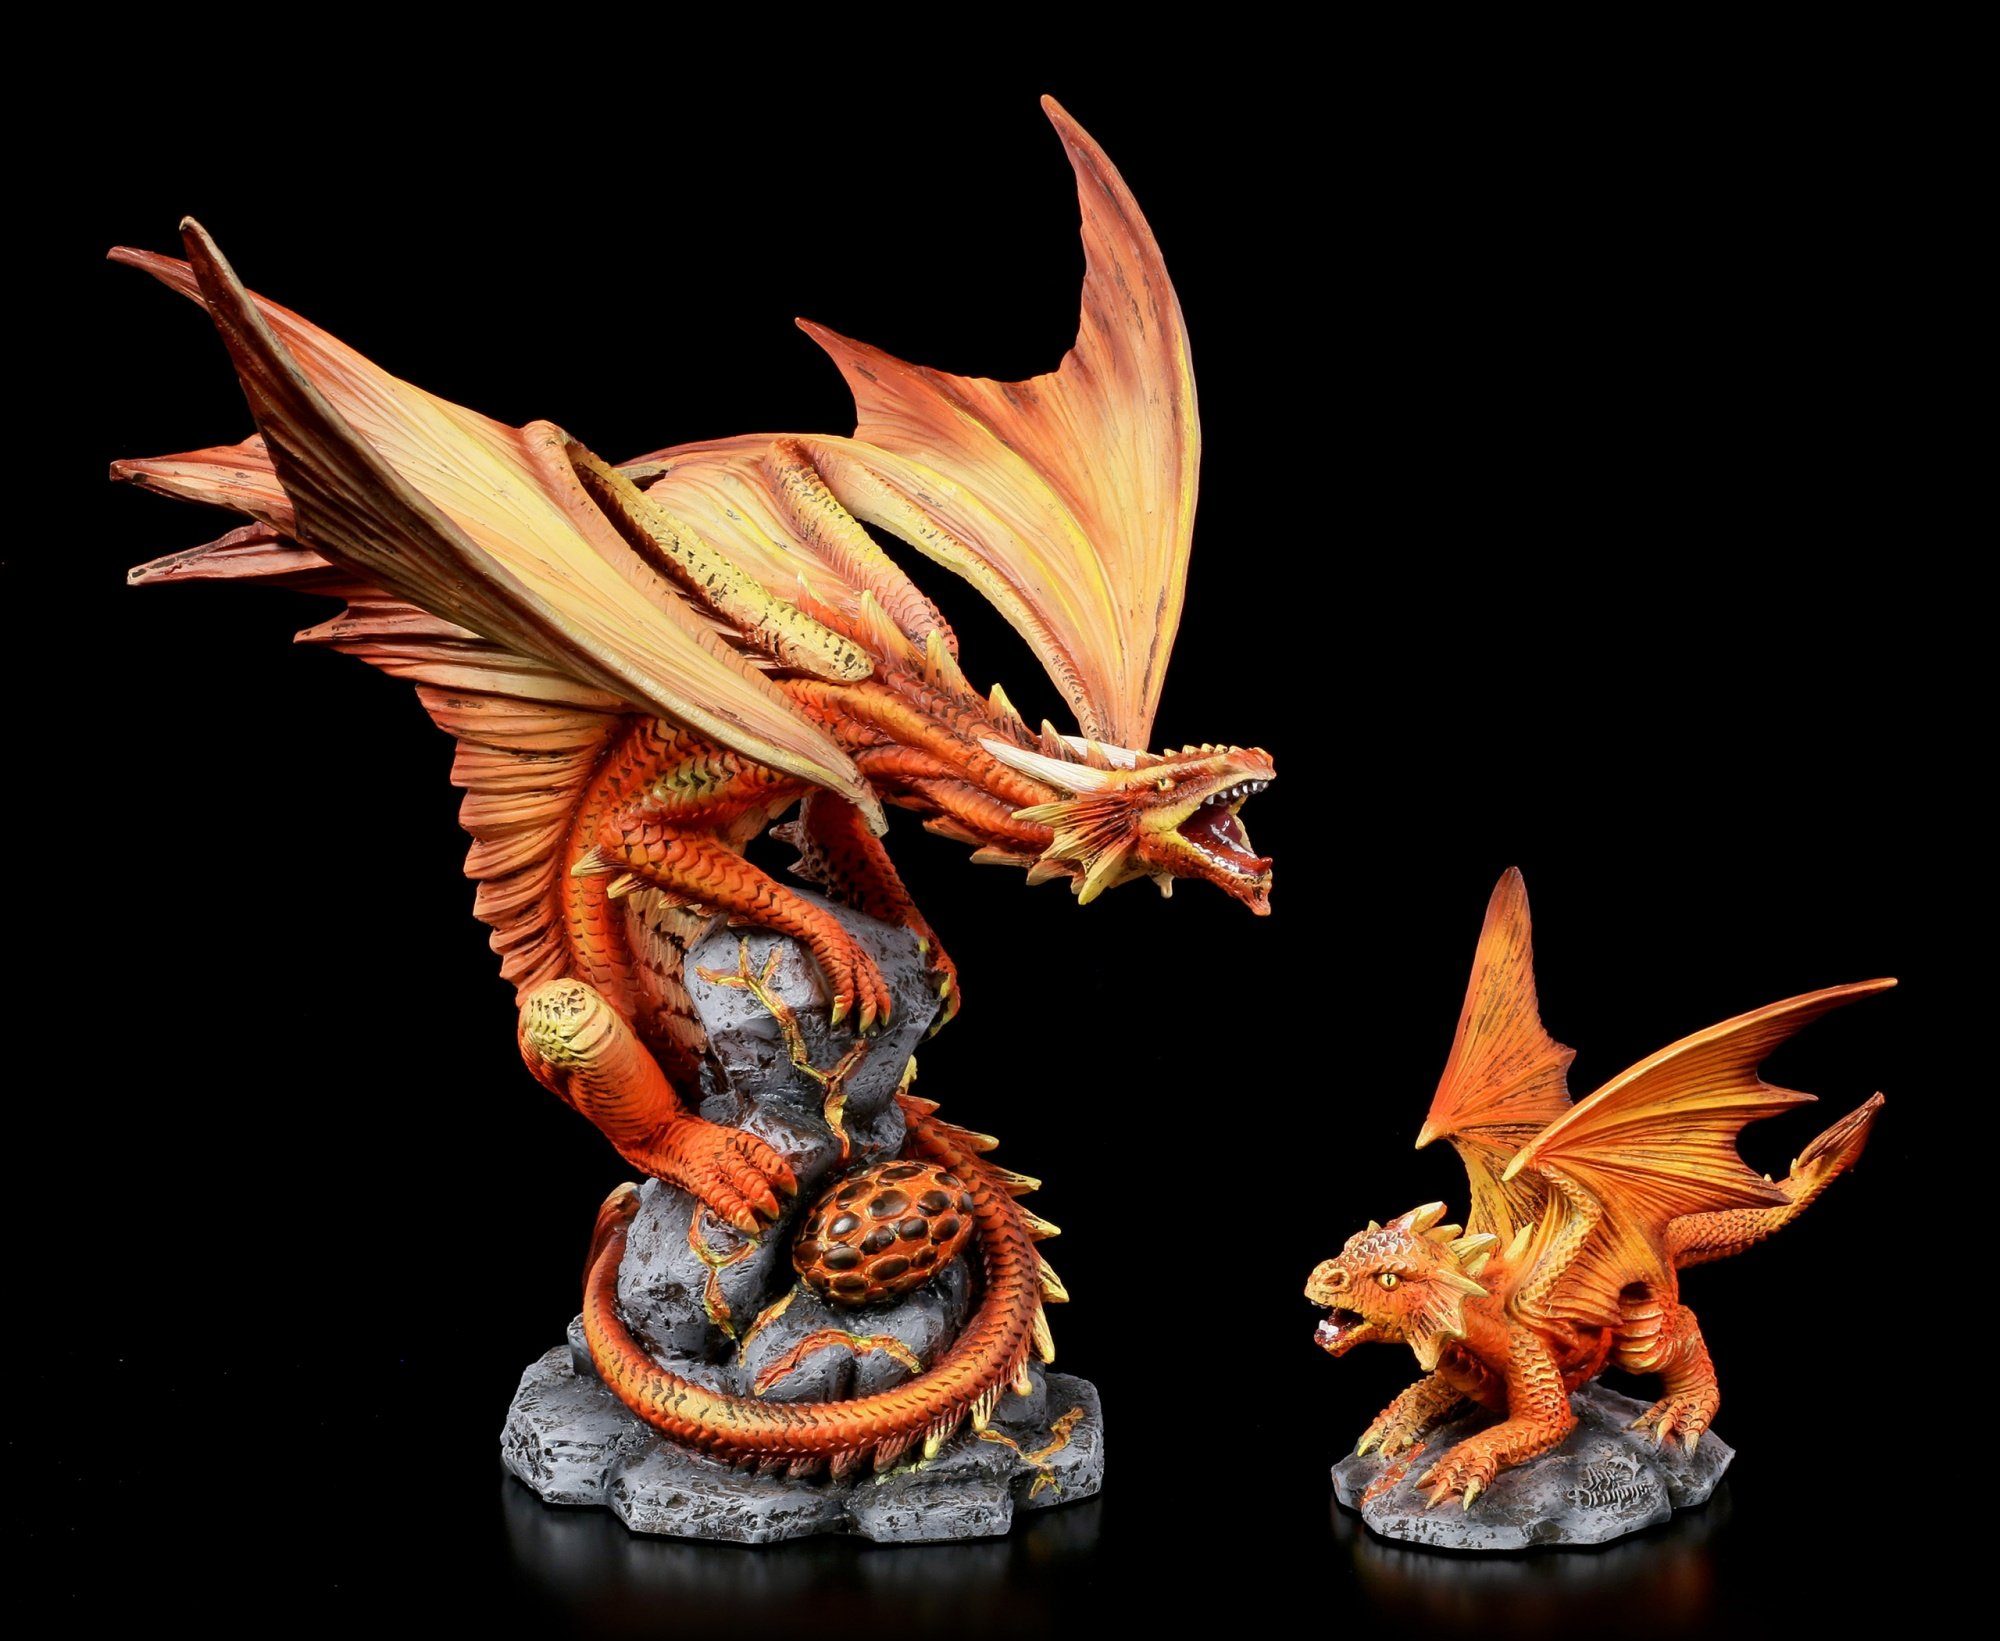 Dragon Figuren Deko Fantasy Adult Figur GmbH Fire Dekofigur Shop Stokes Anne - - Drachen